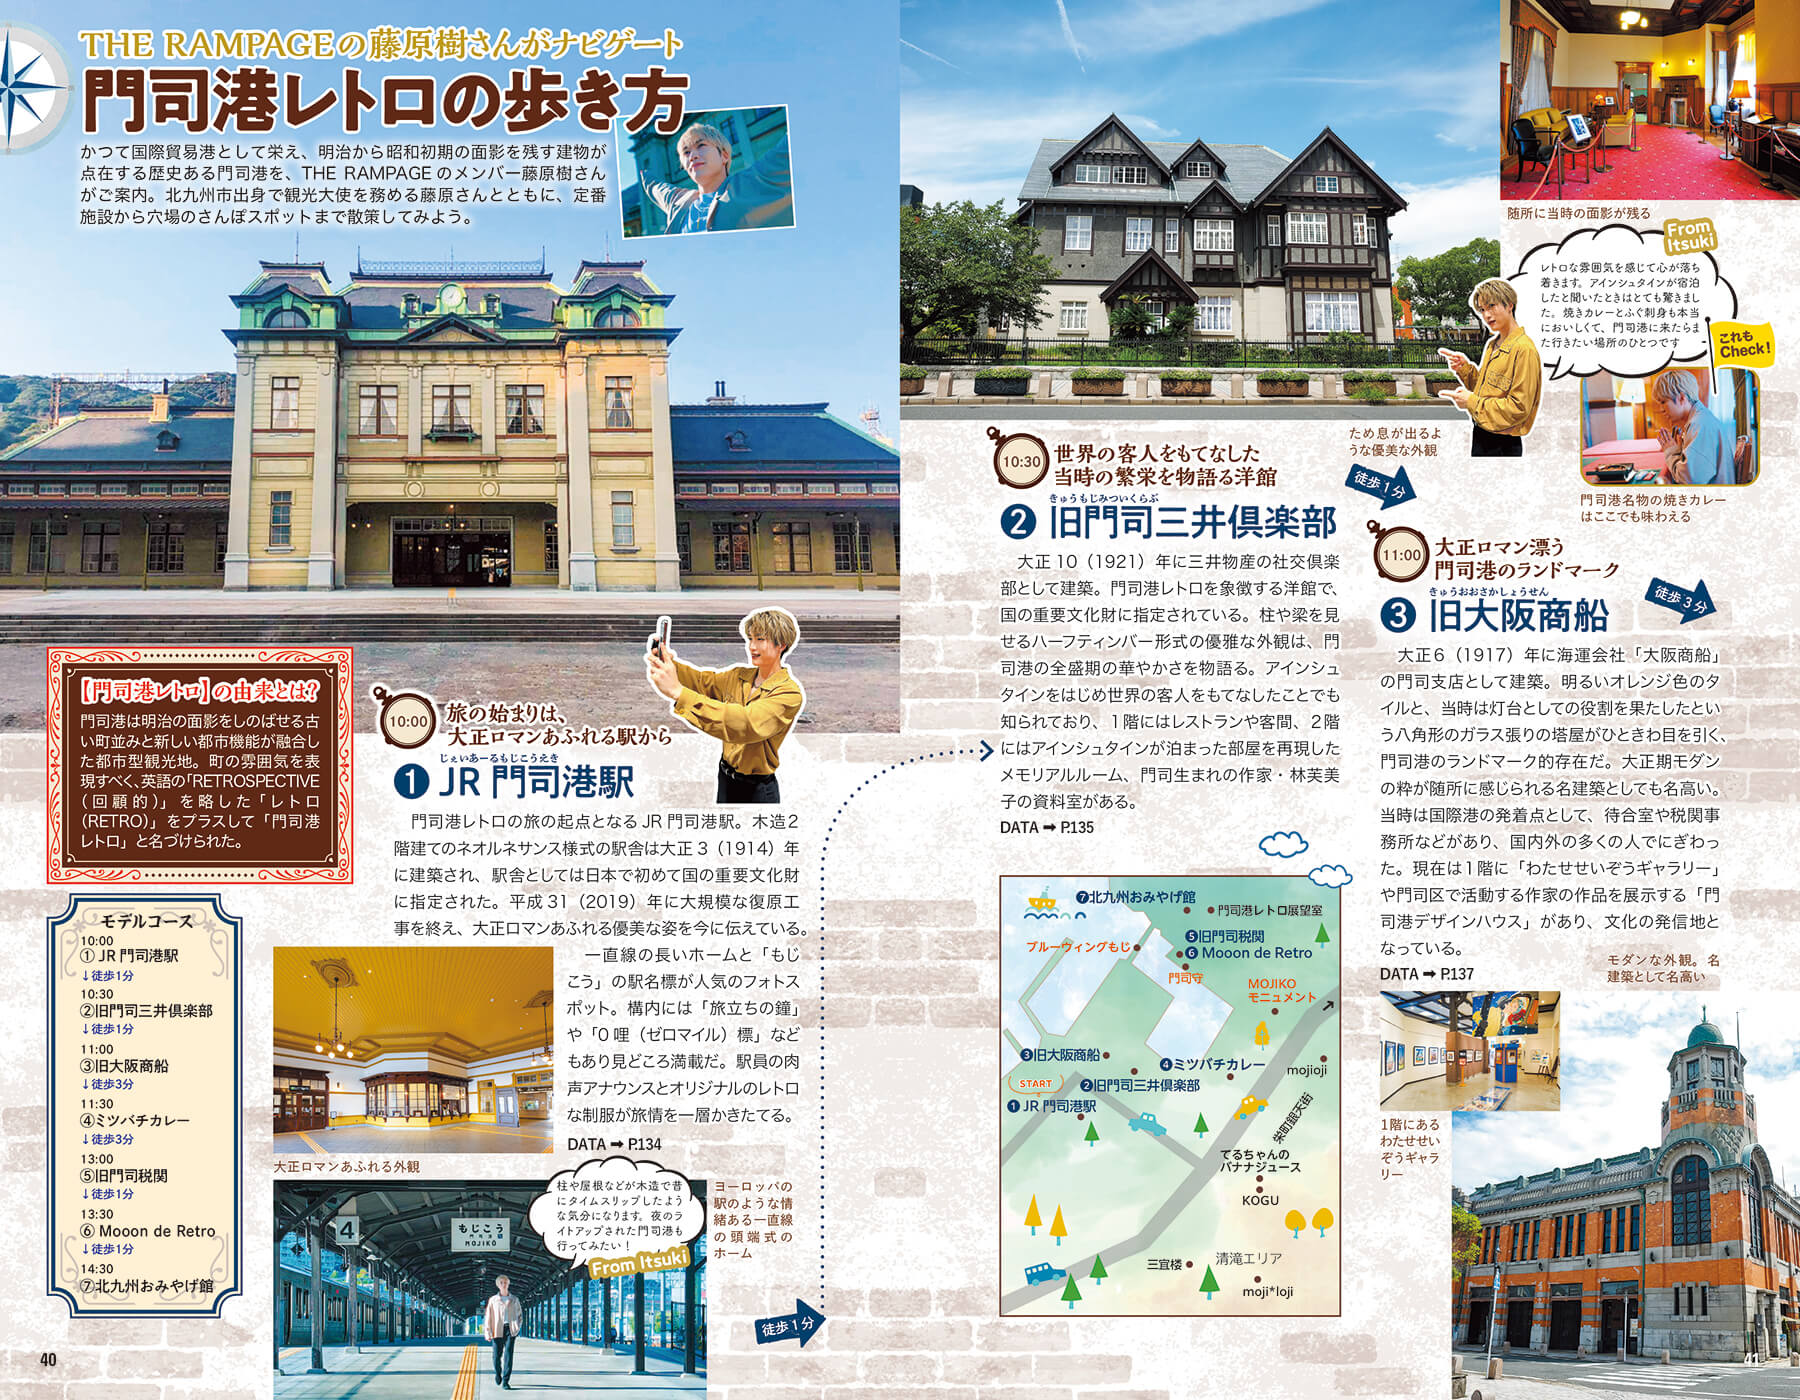 「門司港を訪れたら栄町銀天街や清滝地区、そして中央市場まで訪れたい」紙面